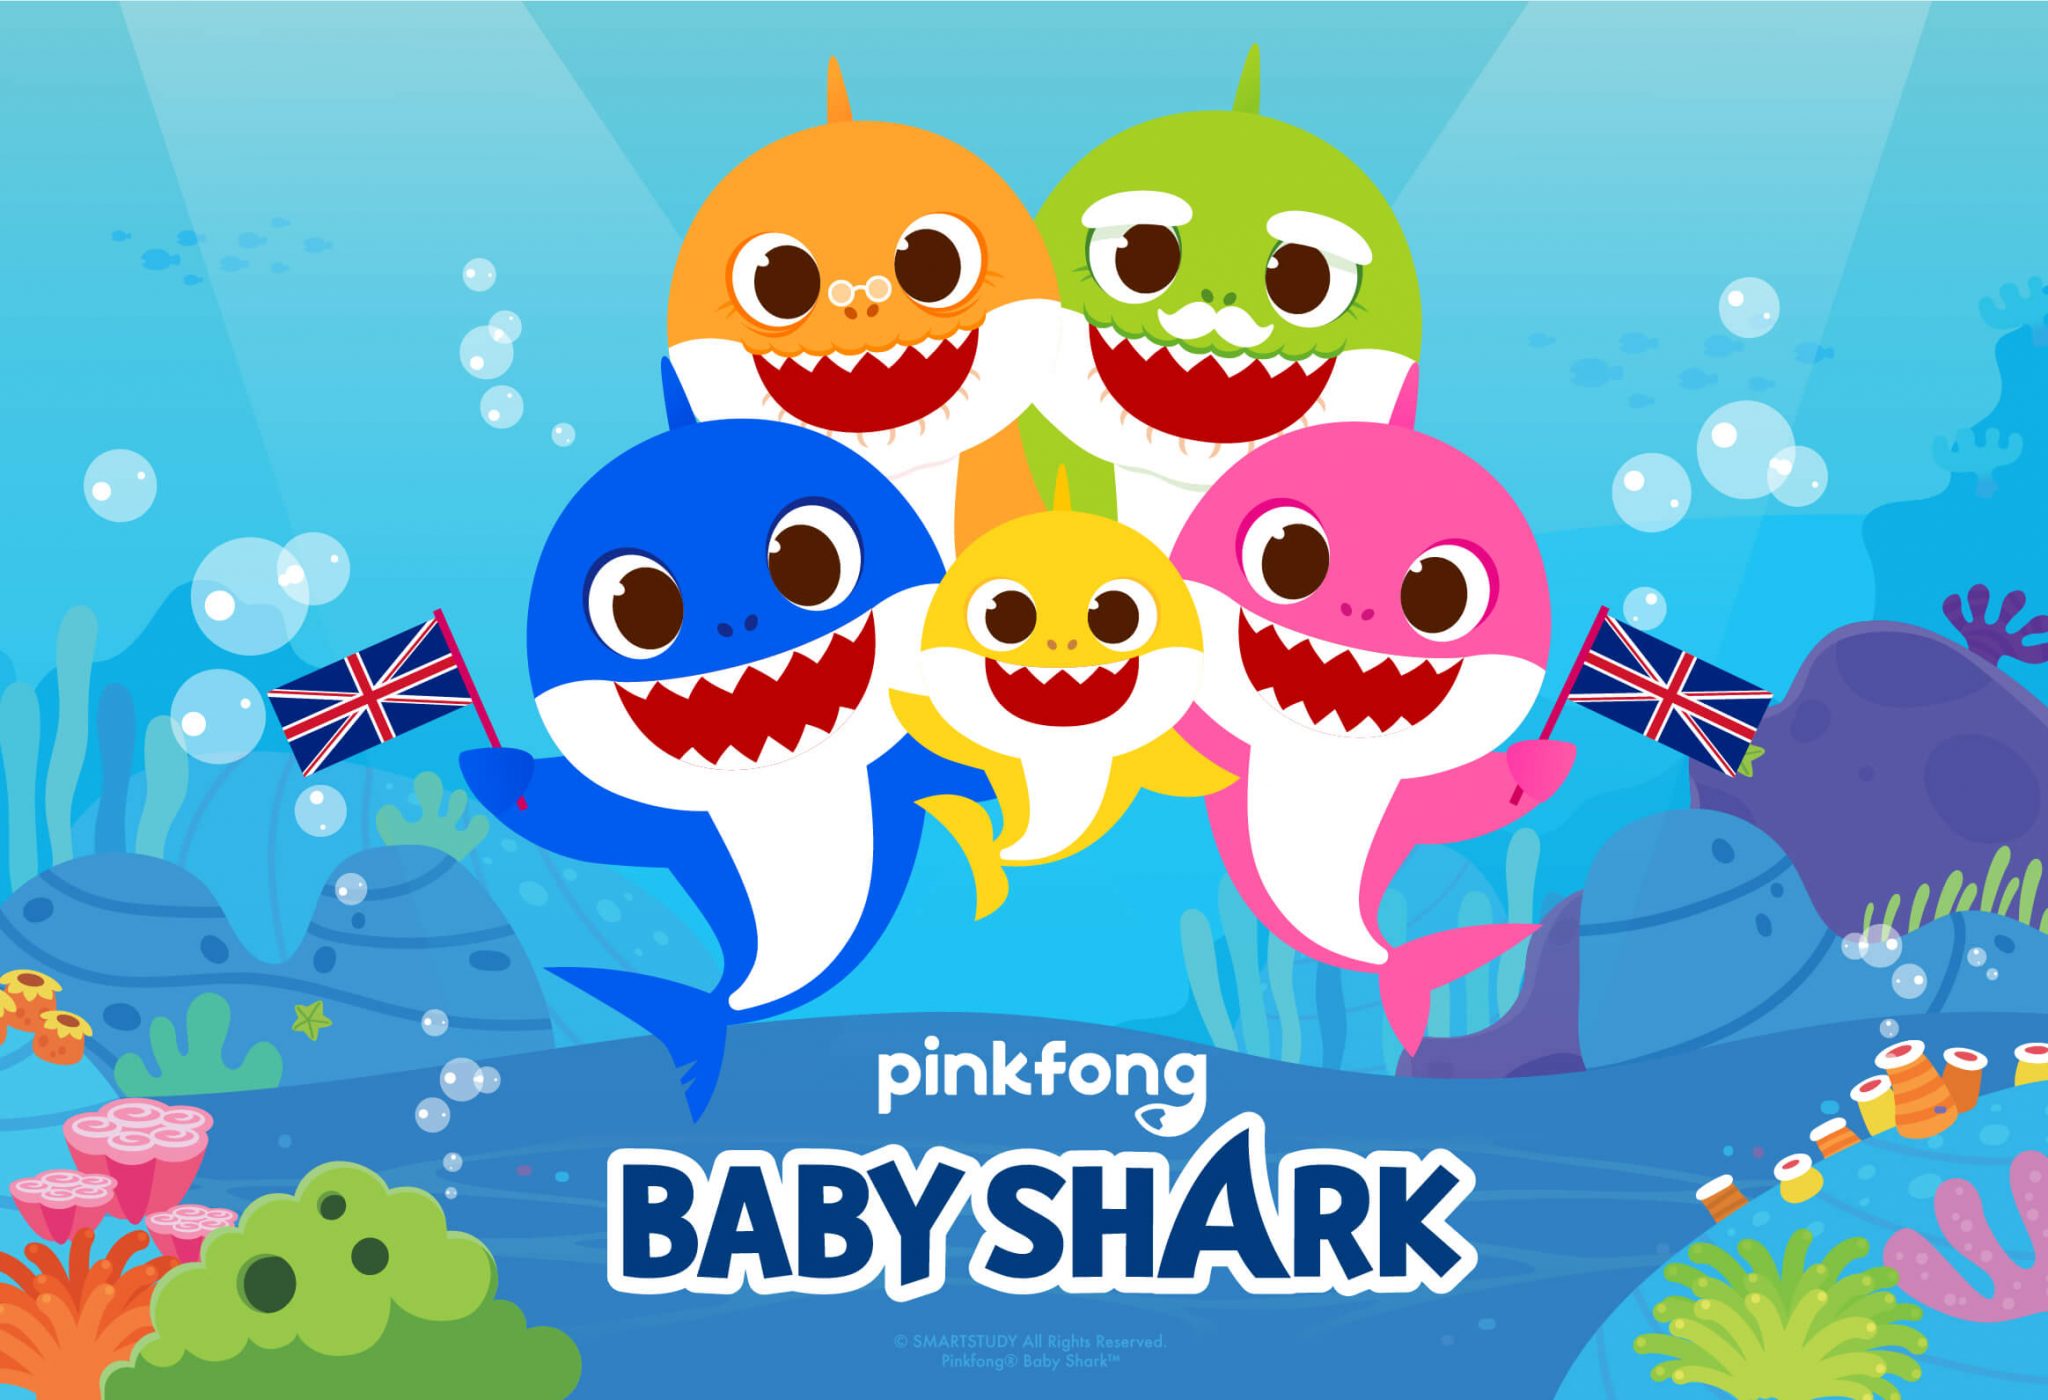 pinkfong & baby shark 